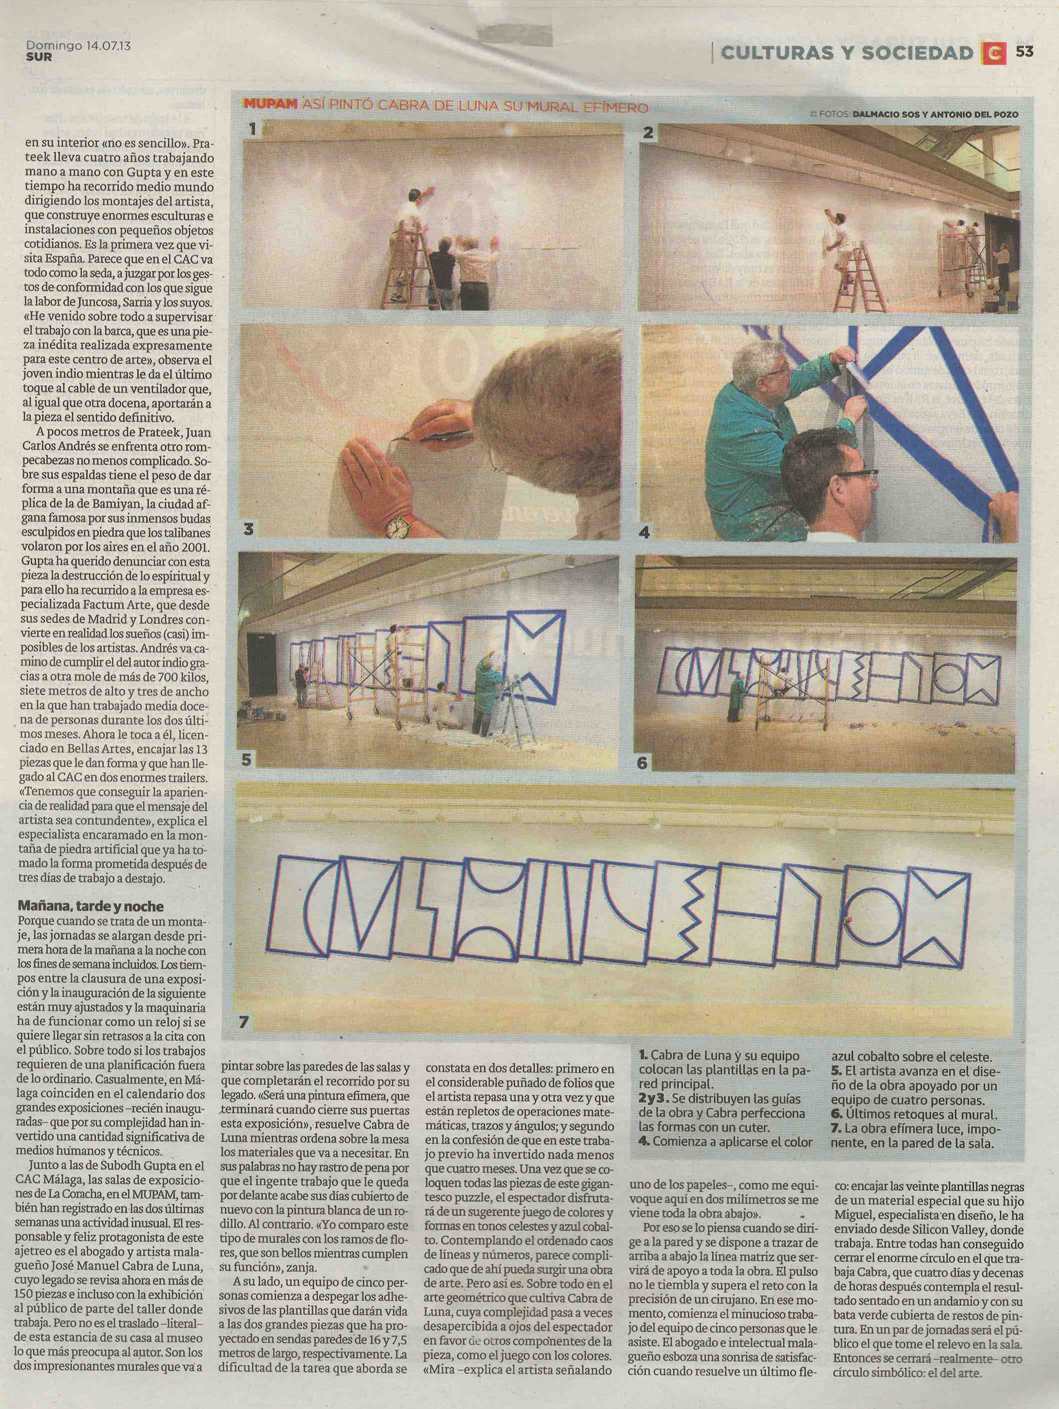 Diario Sur- 14 de julio 2013  Exposición Mupam 2